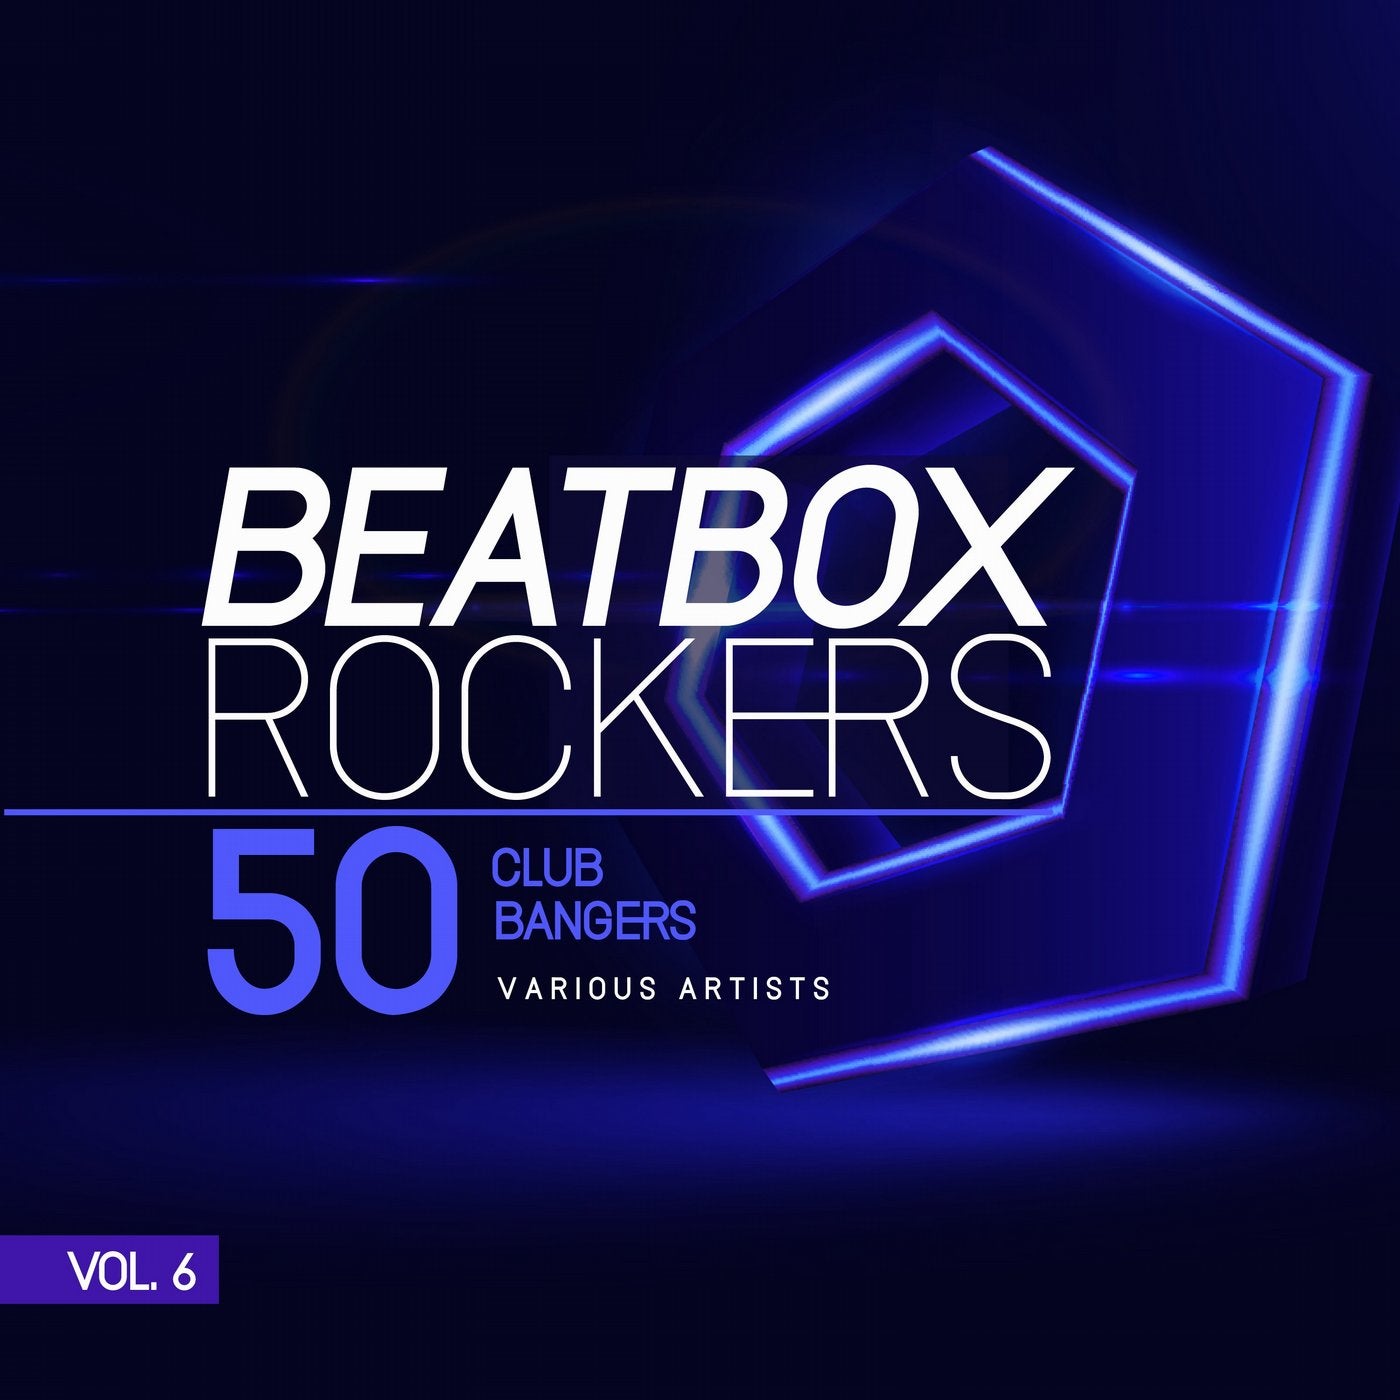 Beatbox Rockers, Vol. 6 (50 Club Bangers)